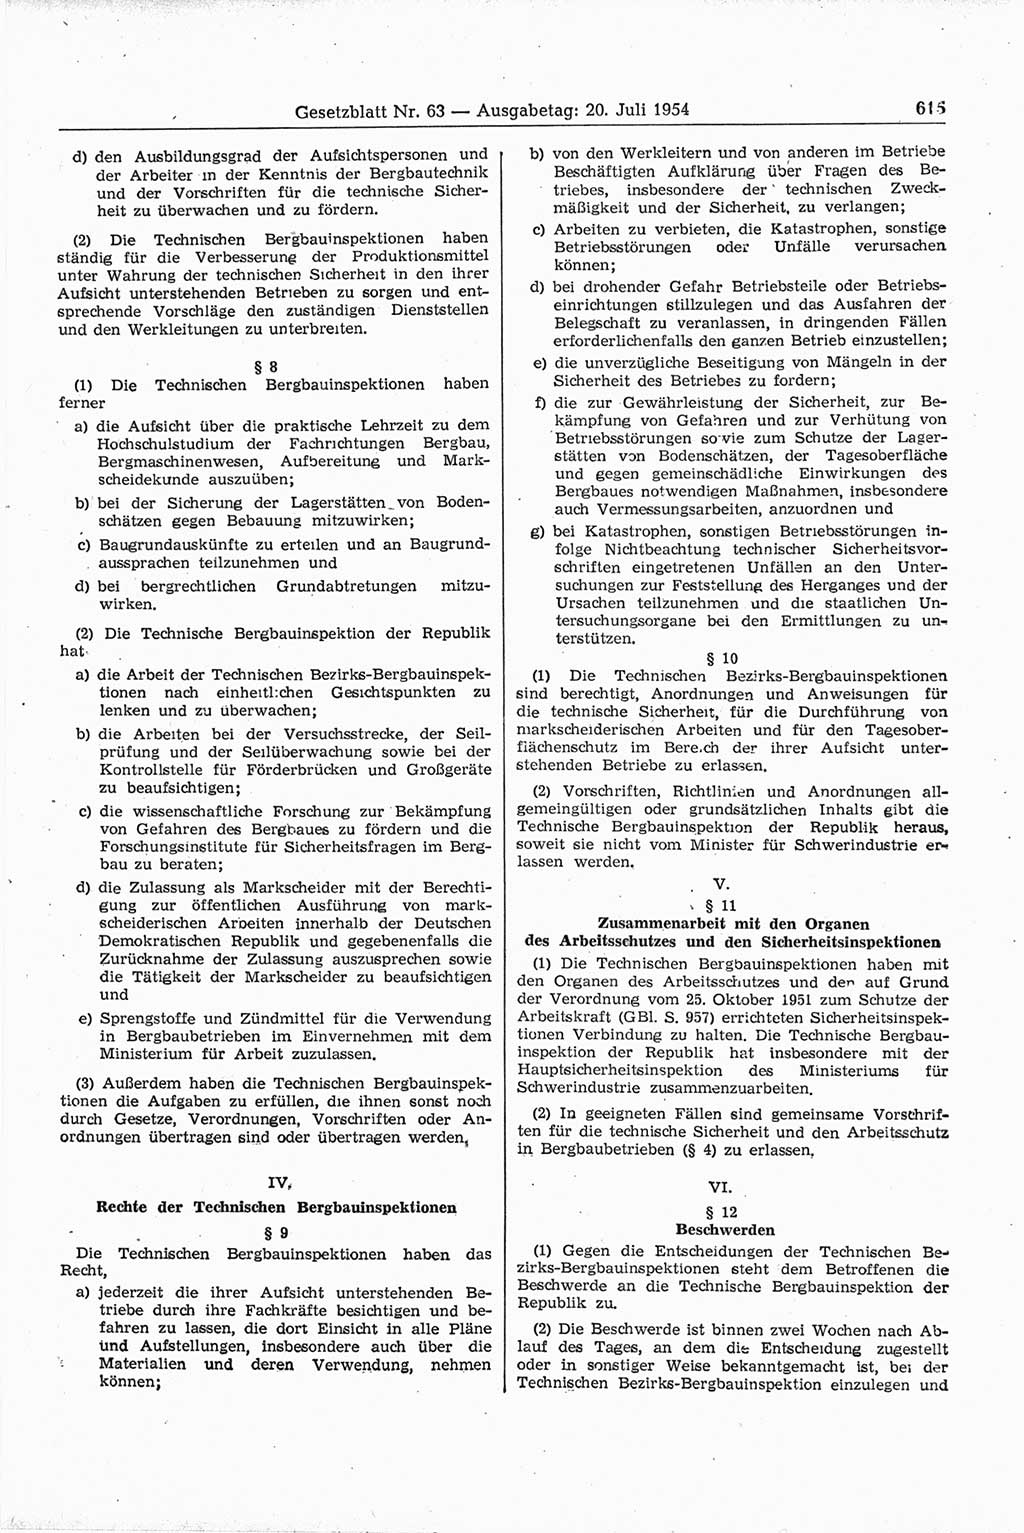 Gesetzblatt (GBl.) der Deutschen Demokratischen Republik (DDR) 1954, Seite 615 (GBl. DDR 1954, S. 615)